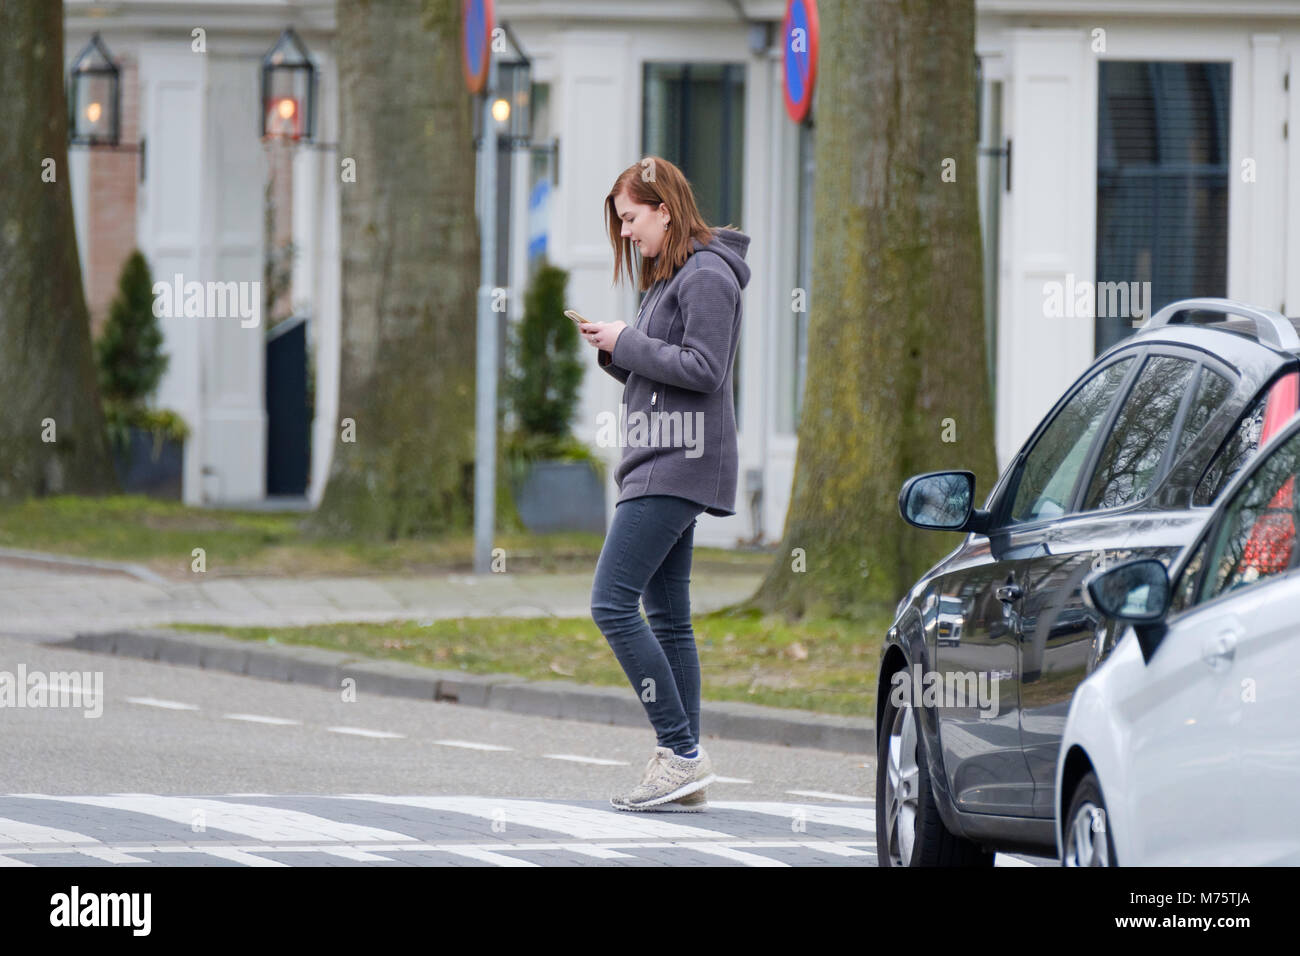 Jeune femme marche sur le tableau de concordance et vérifie son smartphone pour les messages et ne paie aucune attention à la circulation. Banque D'Images